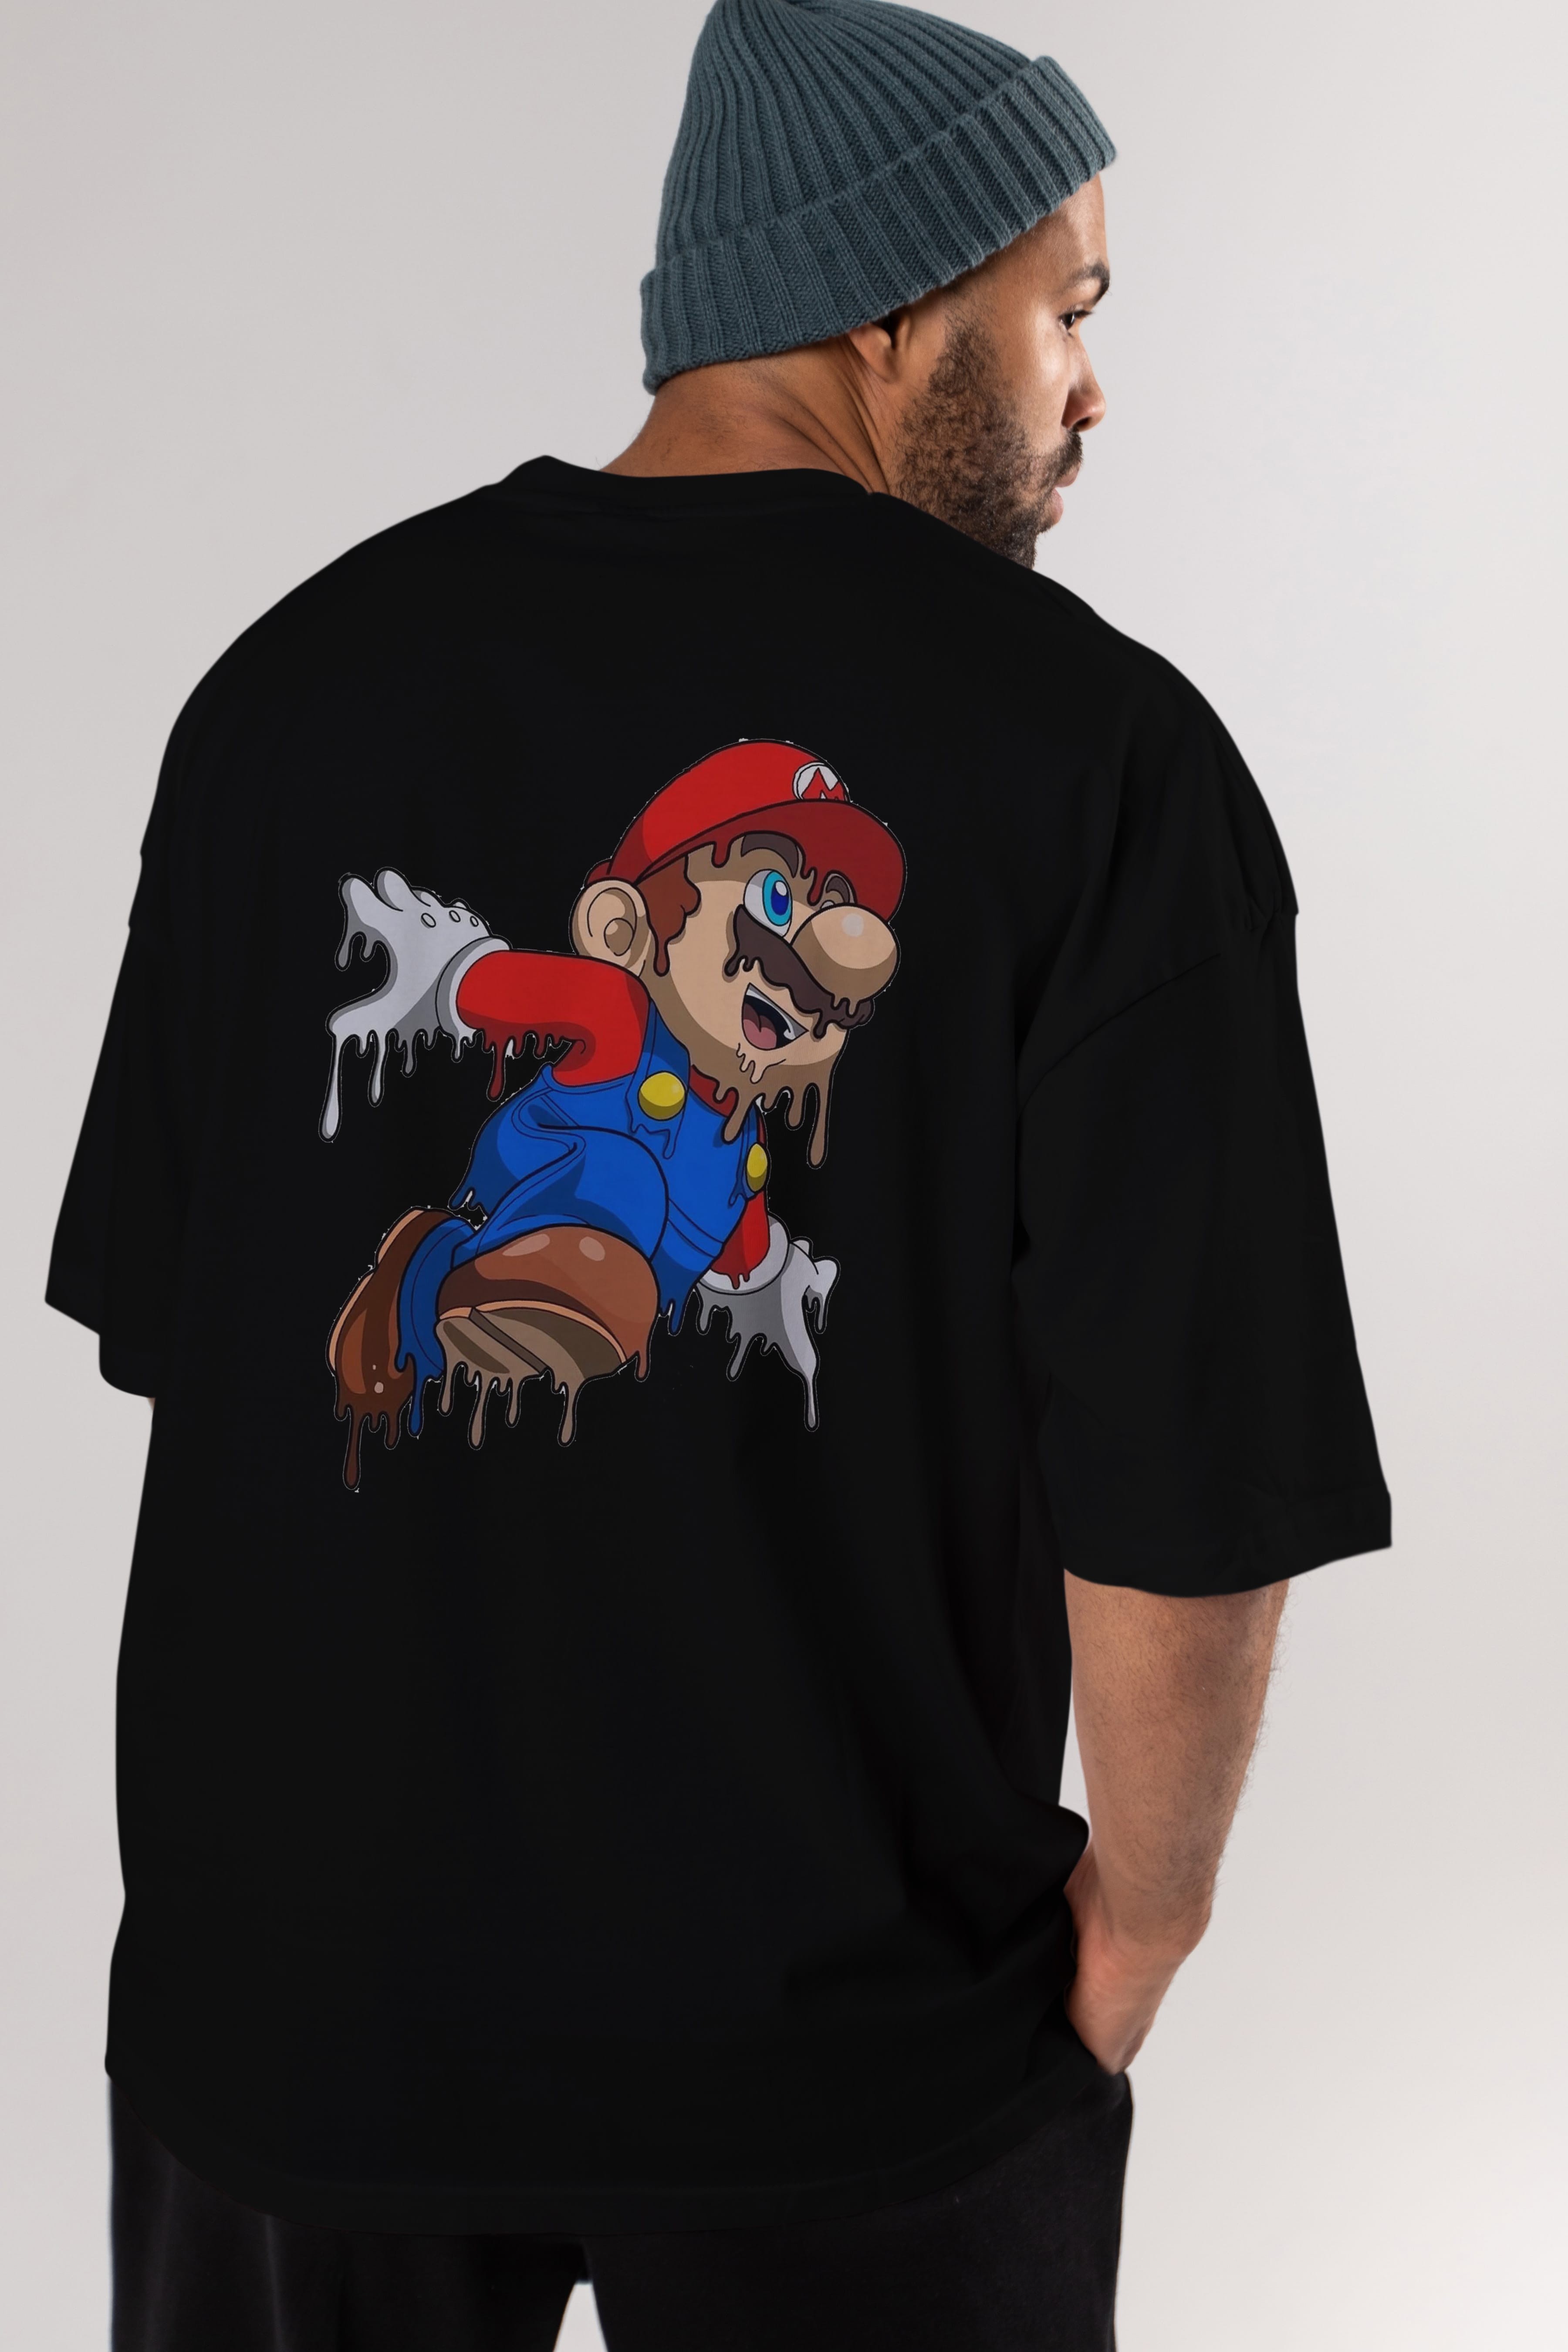 Super Mario 3 Arka Baskılı Oversize t-shirt Erkek Kadın Unisex %100 Pamuk Bisiklet Yaka tişort